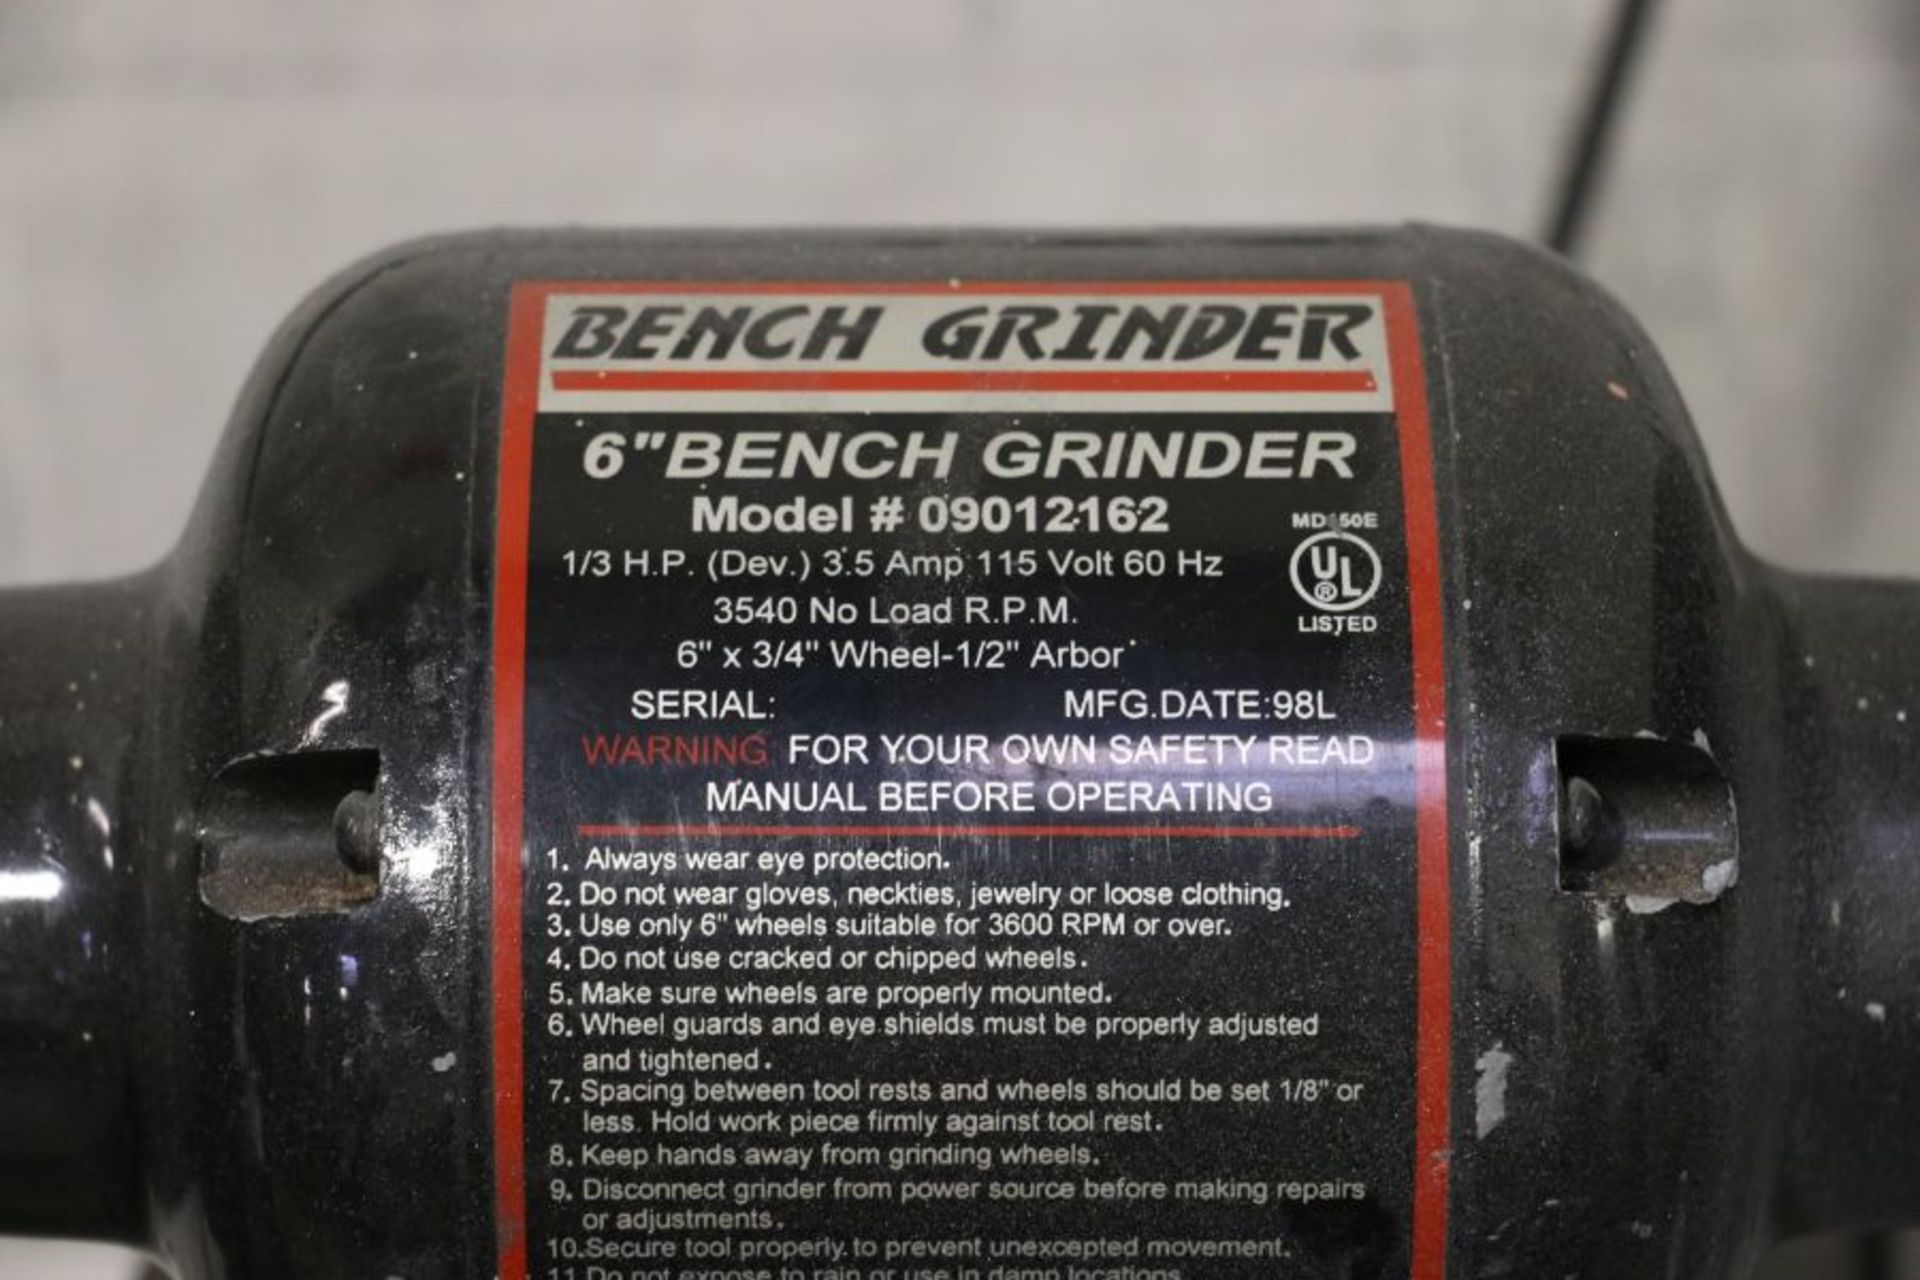 6" Bench Grinder - Image 5 of 5